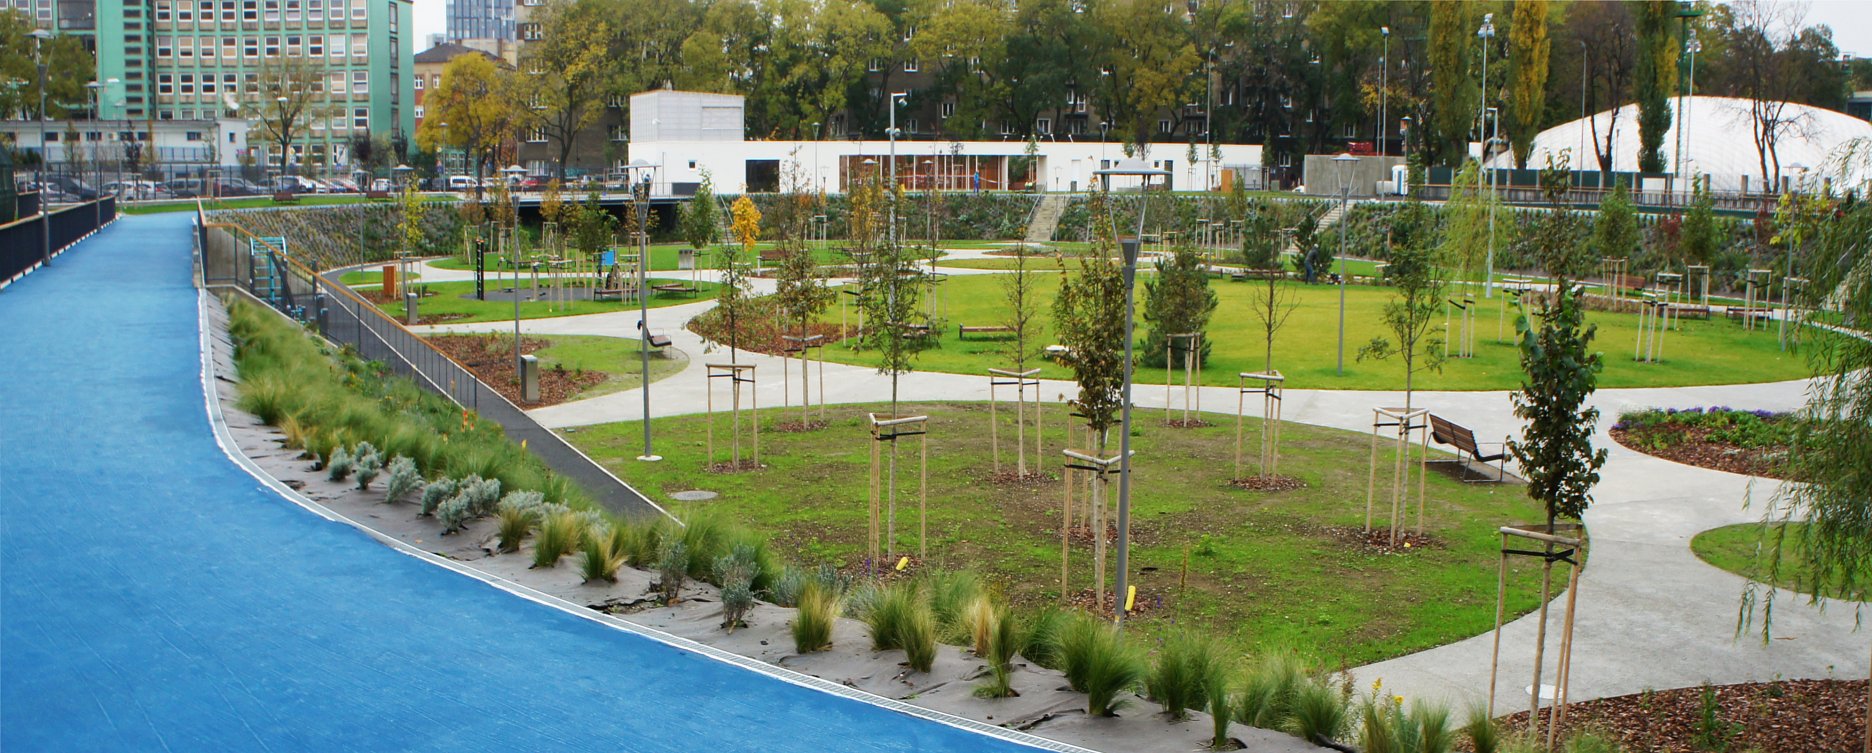 Cyklodráha ako reminiscencia pôvodnej funkcie areálu je zároveň logotyp parku JAMA. Povrchovú vrstvu betónovej dráhy tvorí farebný akrylátový povrch.